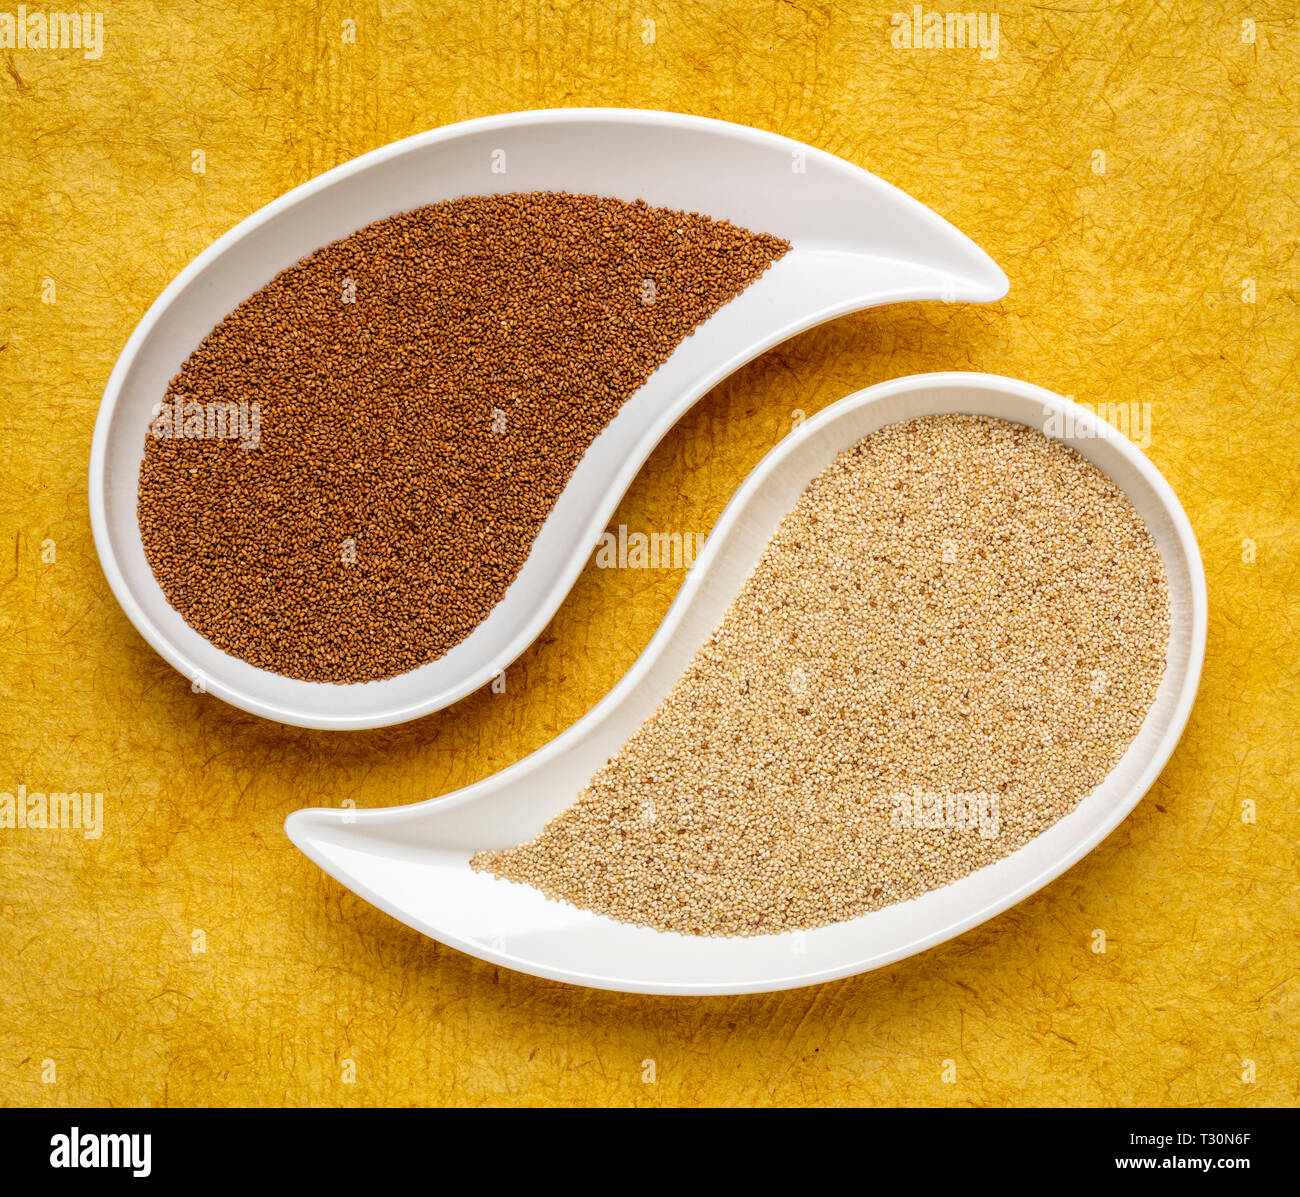 Glutenfreie Braun und Elfenbein teff Korn auf teardrop Form bowll gegen gelbe strukturiertes Papier - wichtige Nahrungsmittel Getreide in Äthiopien und Eritrea Stockfoto